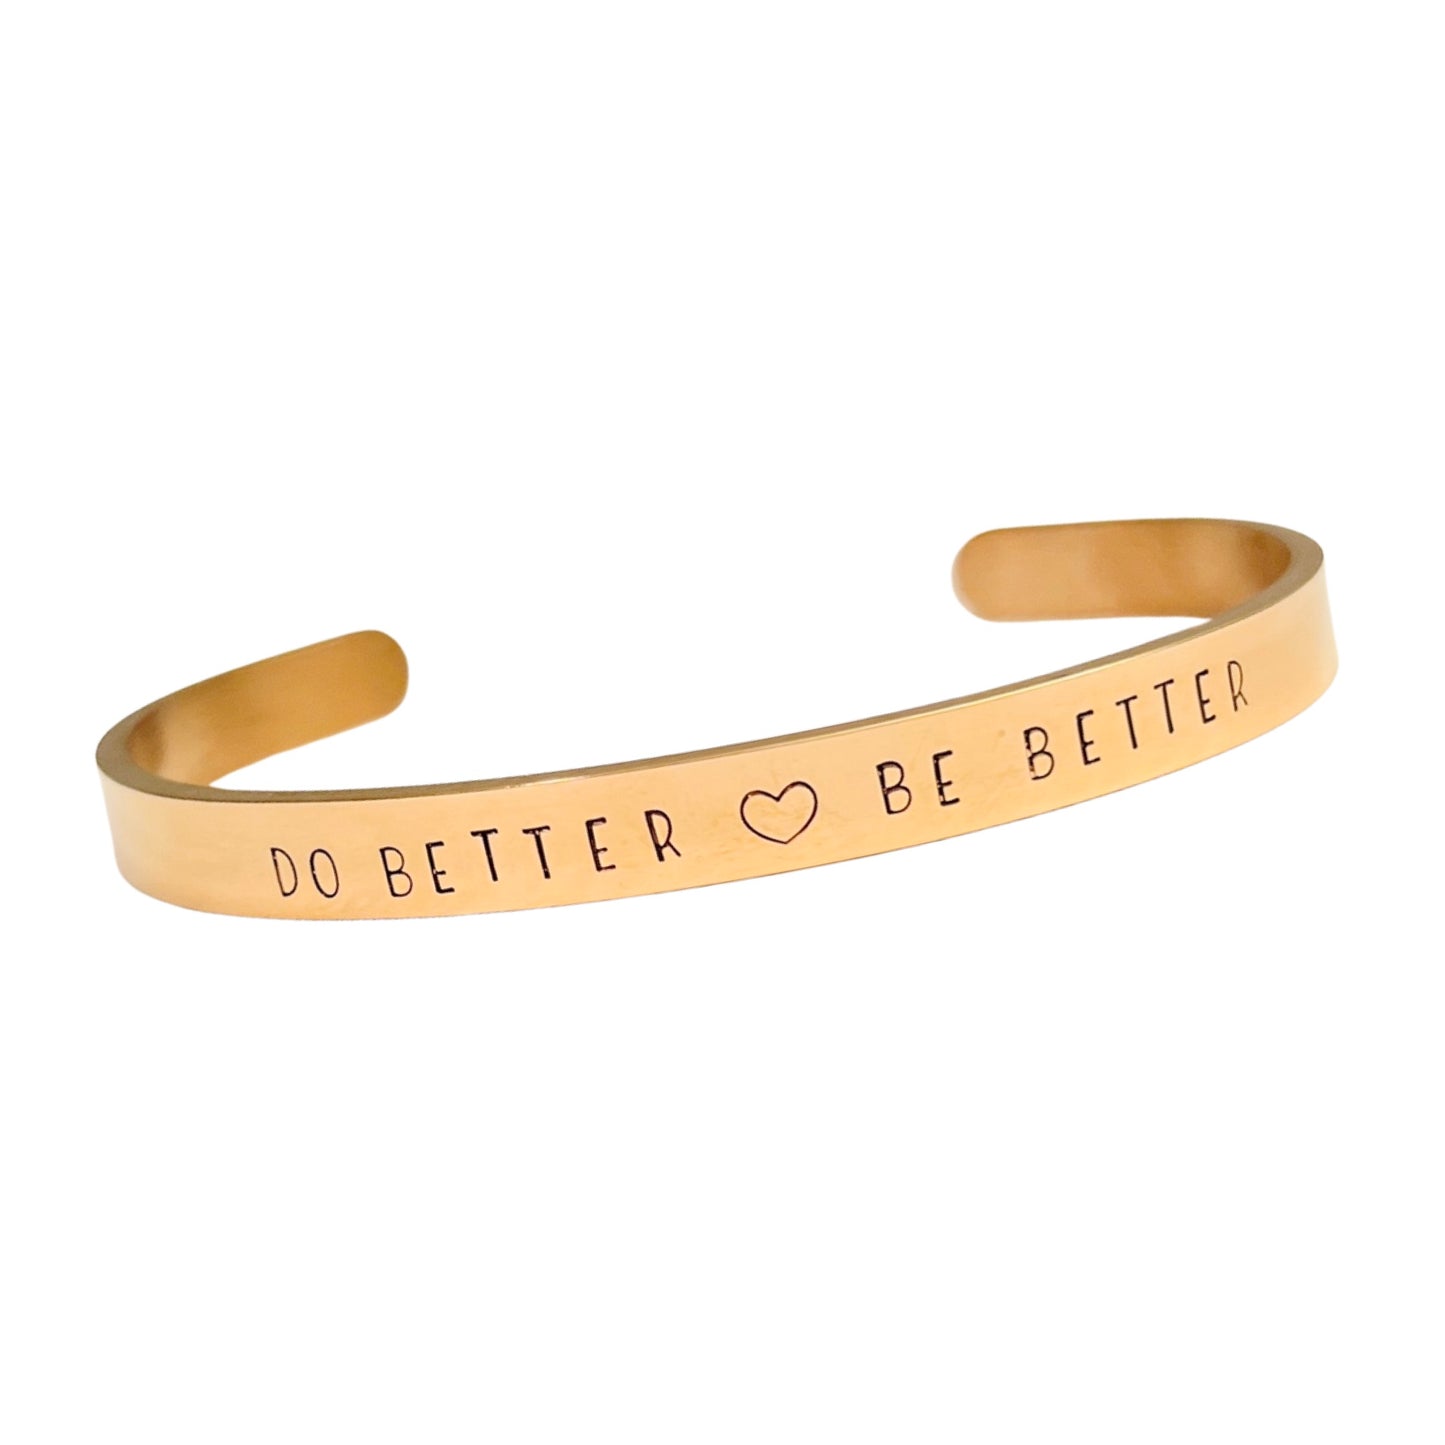 Do Better | Be Better - Cuff Bracelet